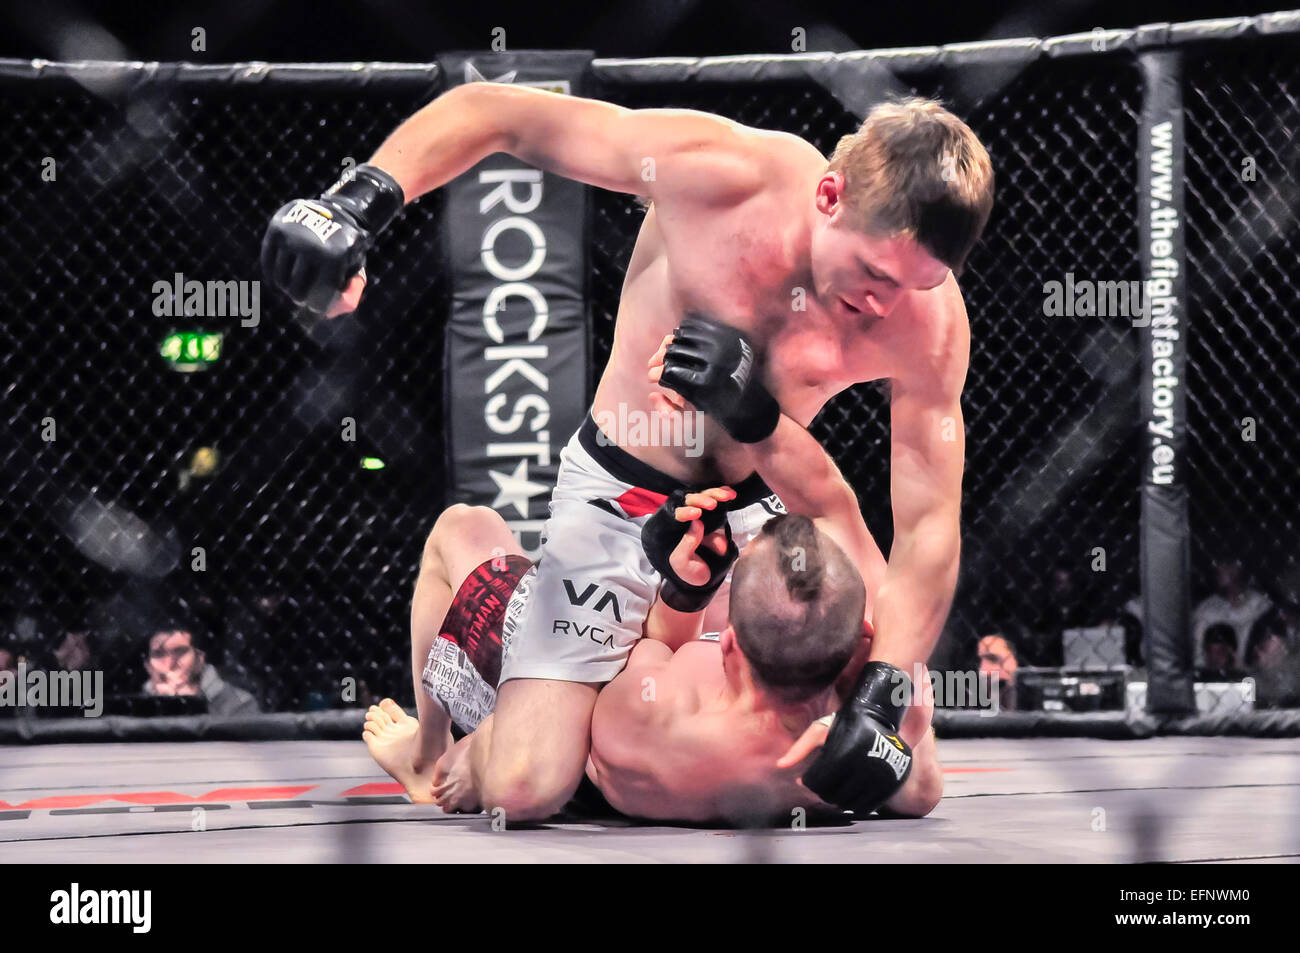 MMA-Kämpfer hält seinen Gegner auf die Leinwand und beginnt Landung Schläge auf Kopf und Gesicht Stockfoto